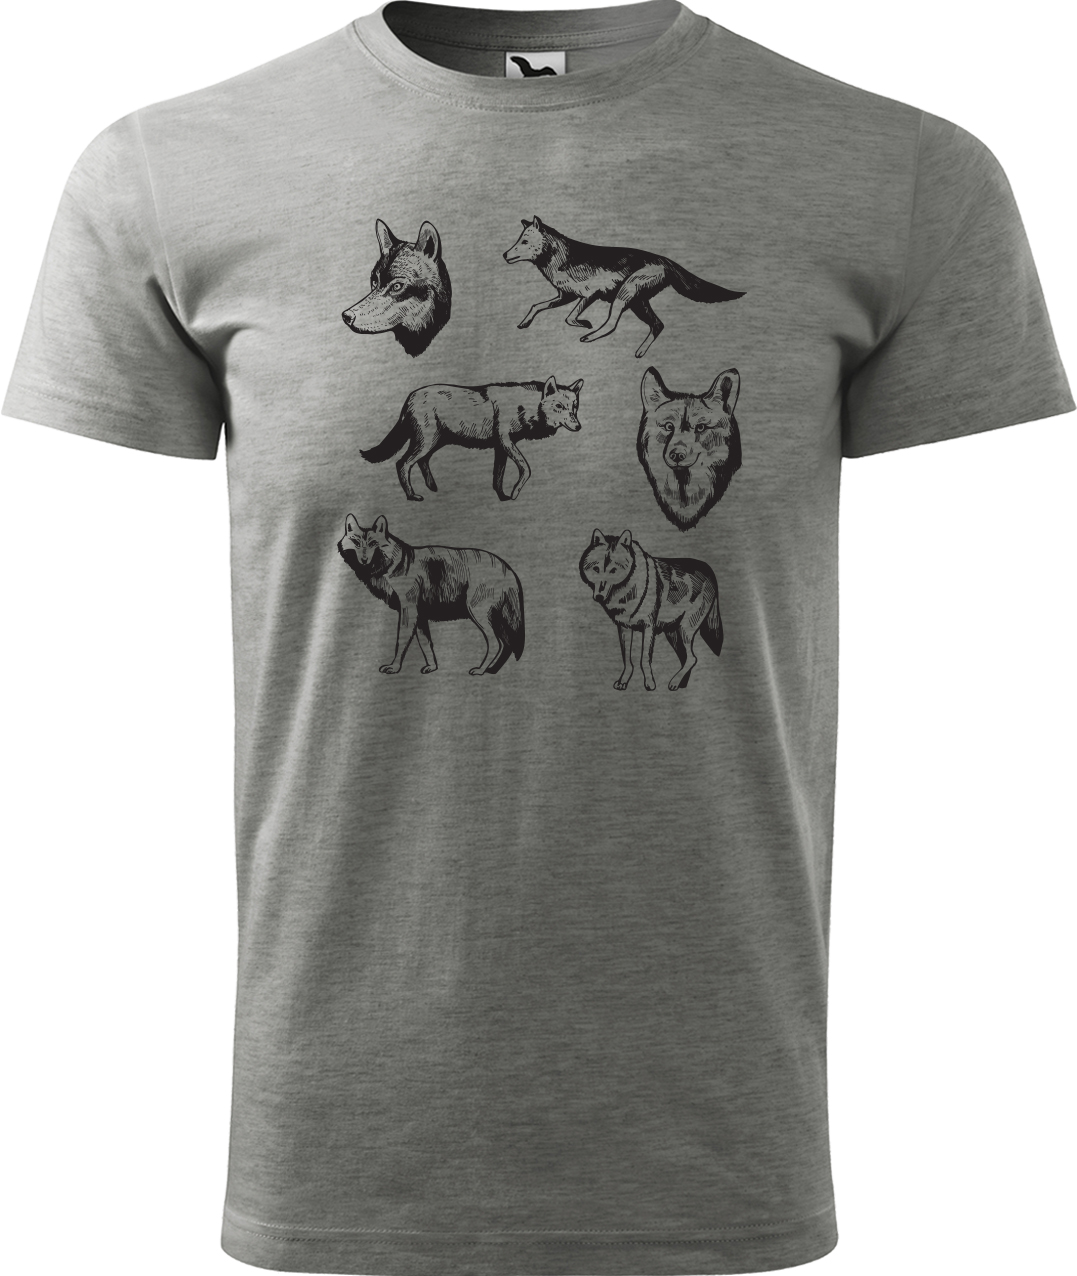 Pánské tričko s vlkem - Vlci Velikost: S, Barva: Tmavě šedý melír (12), Střih: pánský